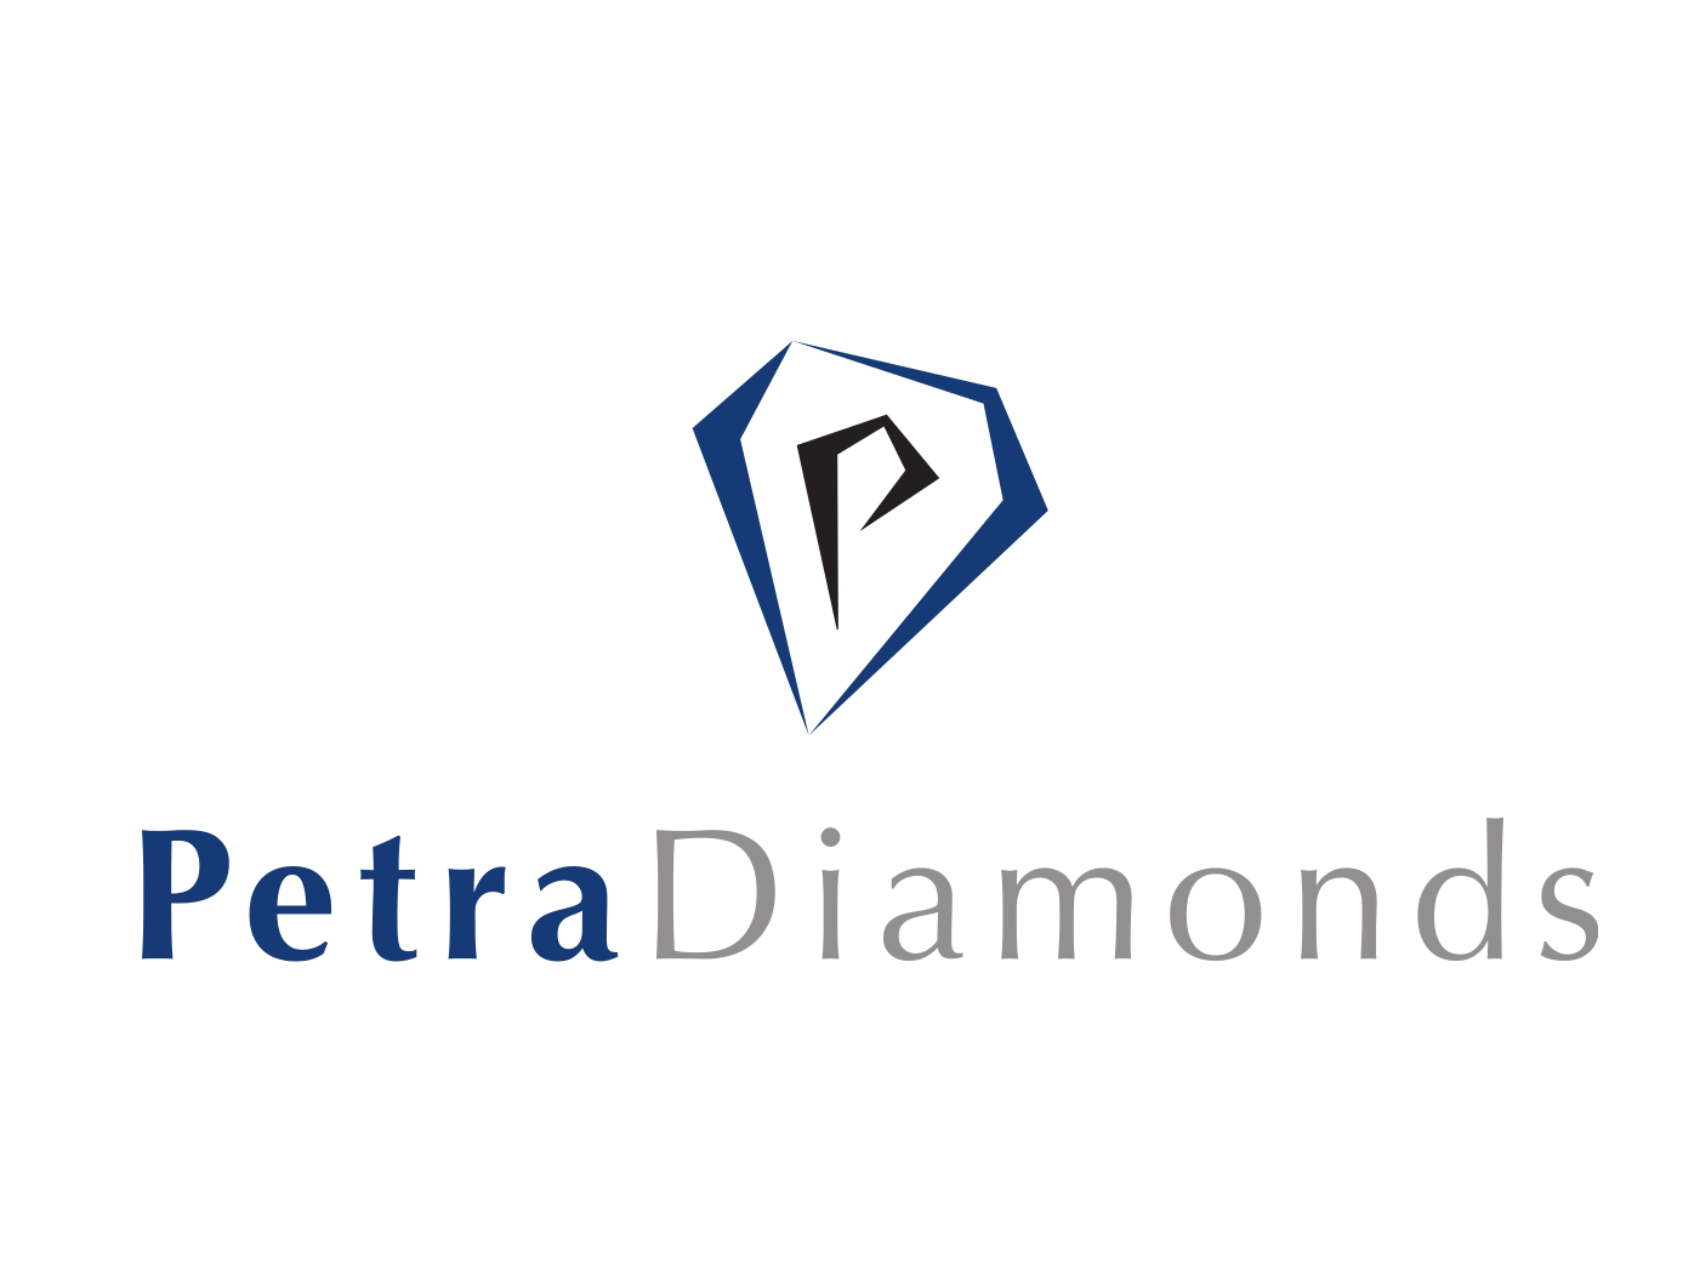 Petra diamonds front page(1)